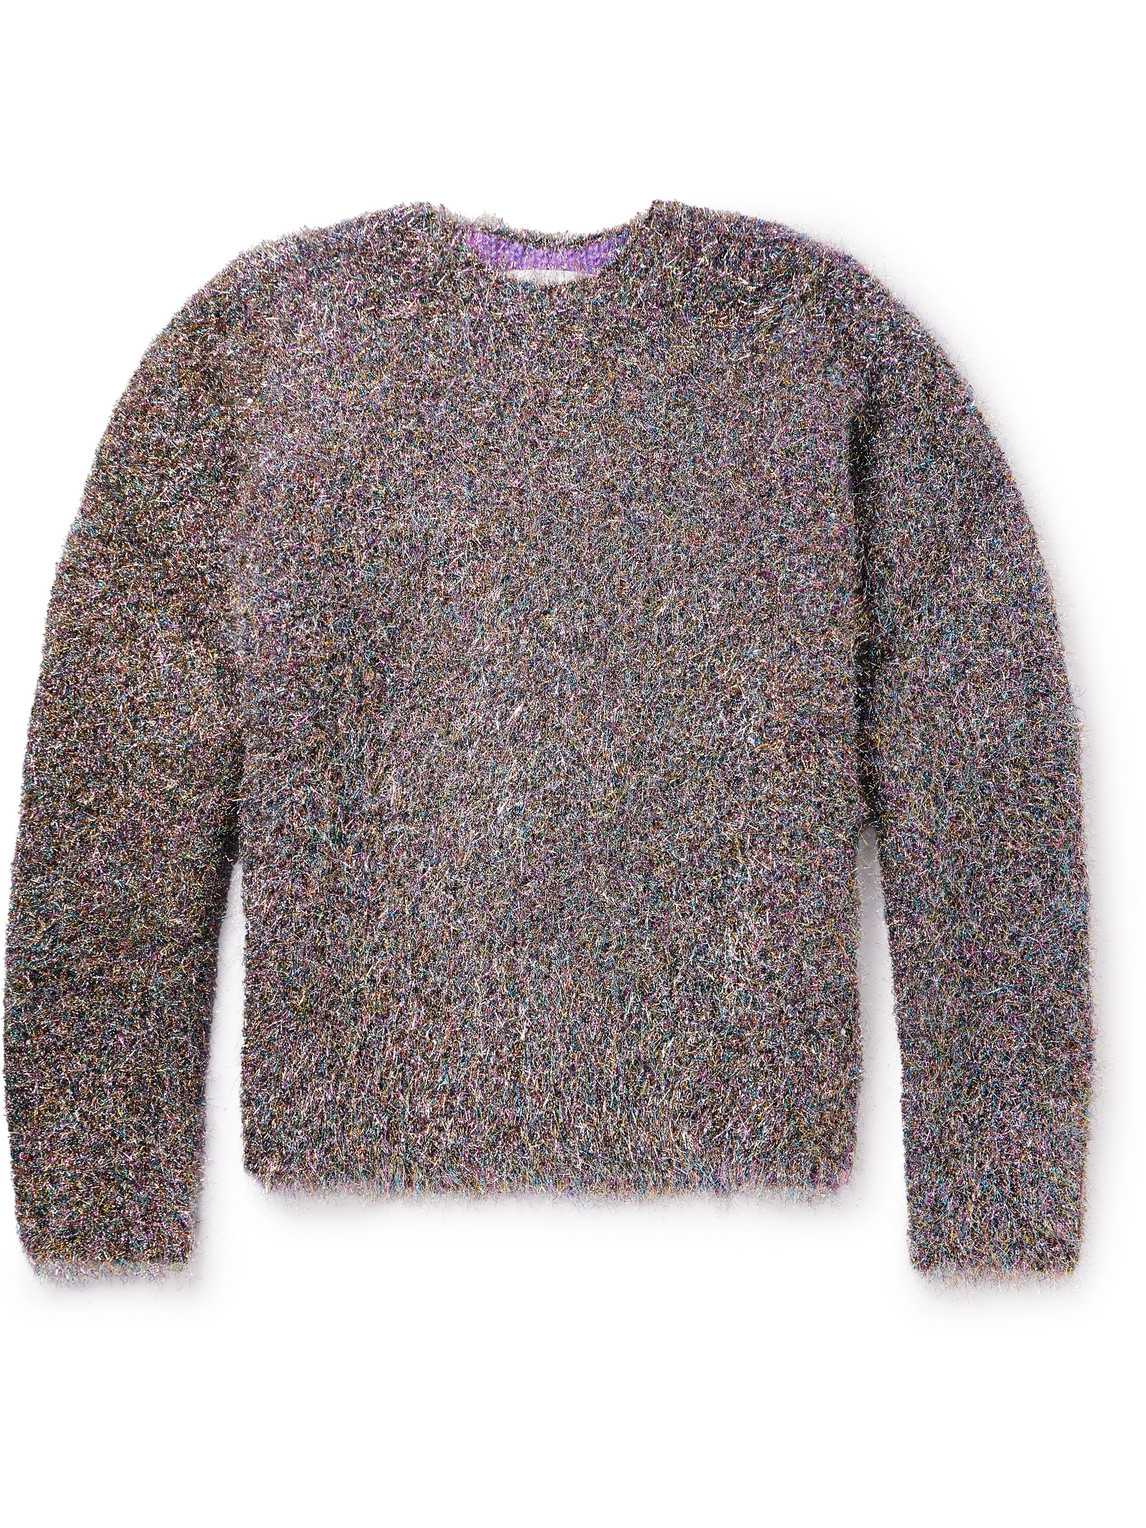 Jil Sander Metallic Knit Sweater In Gray